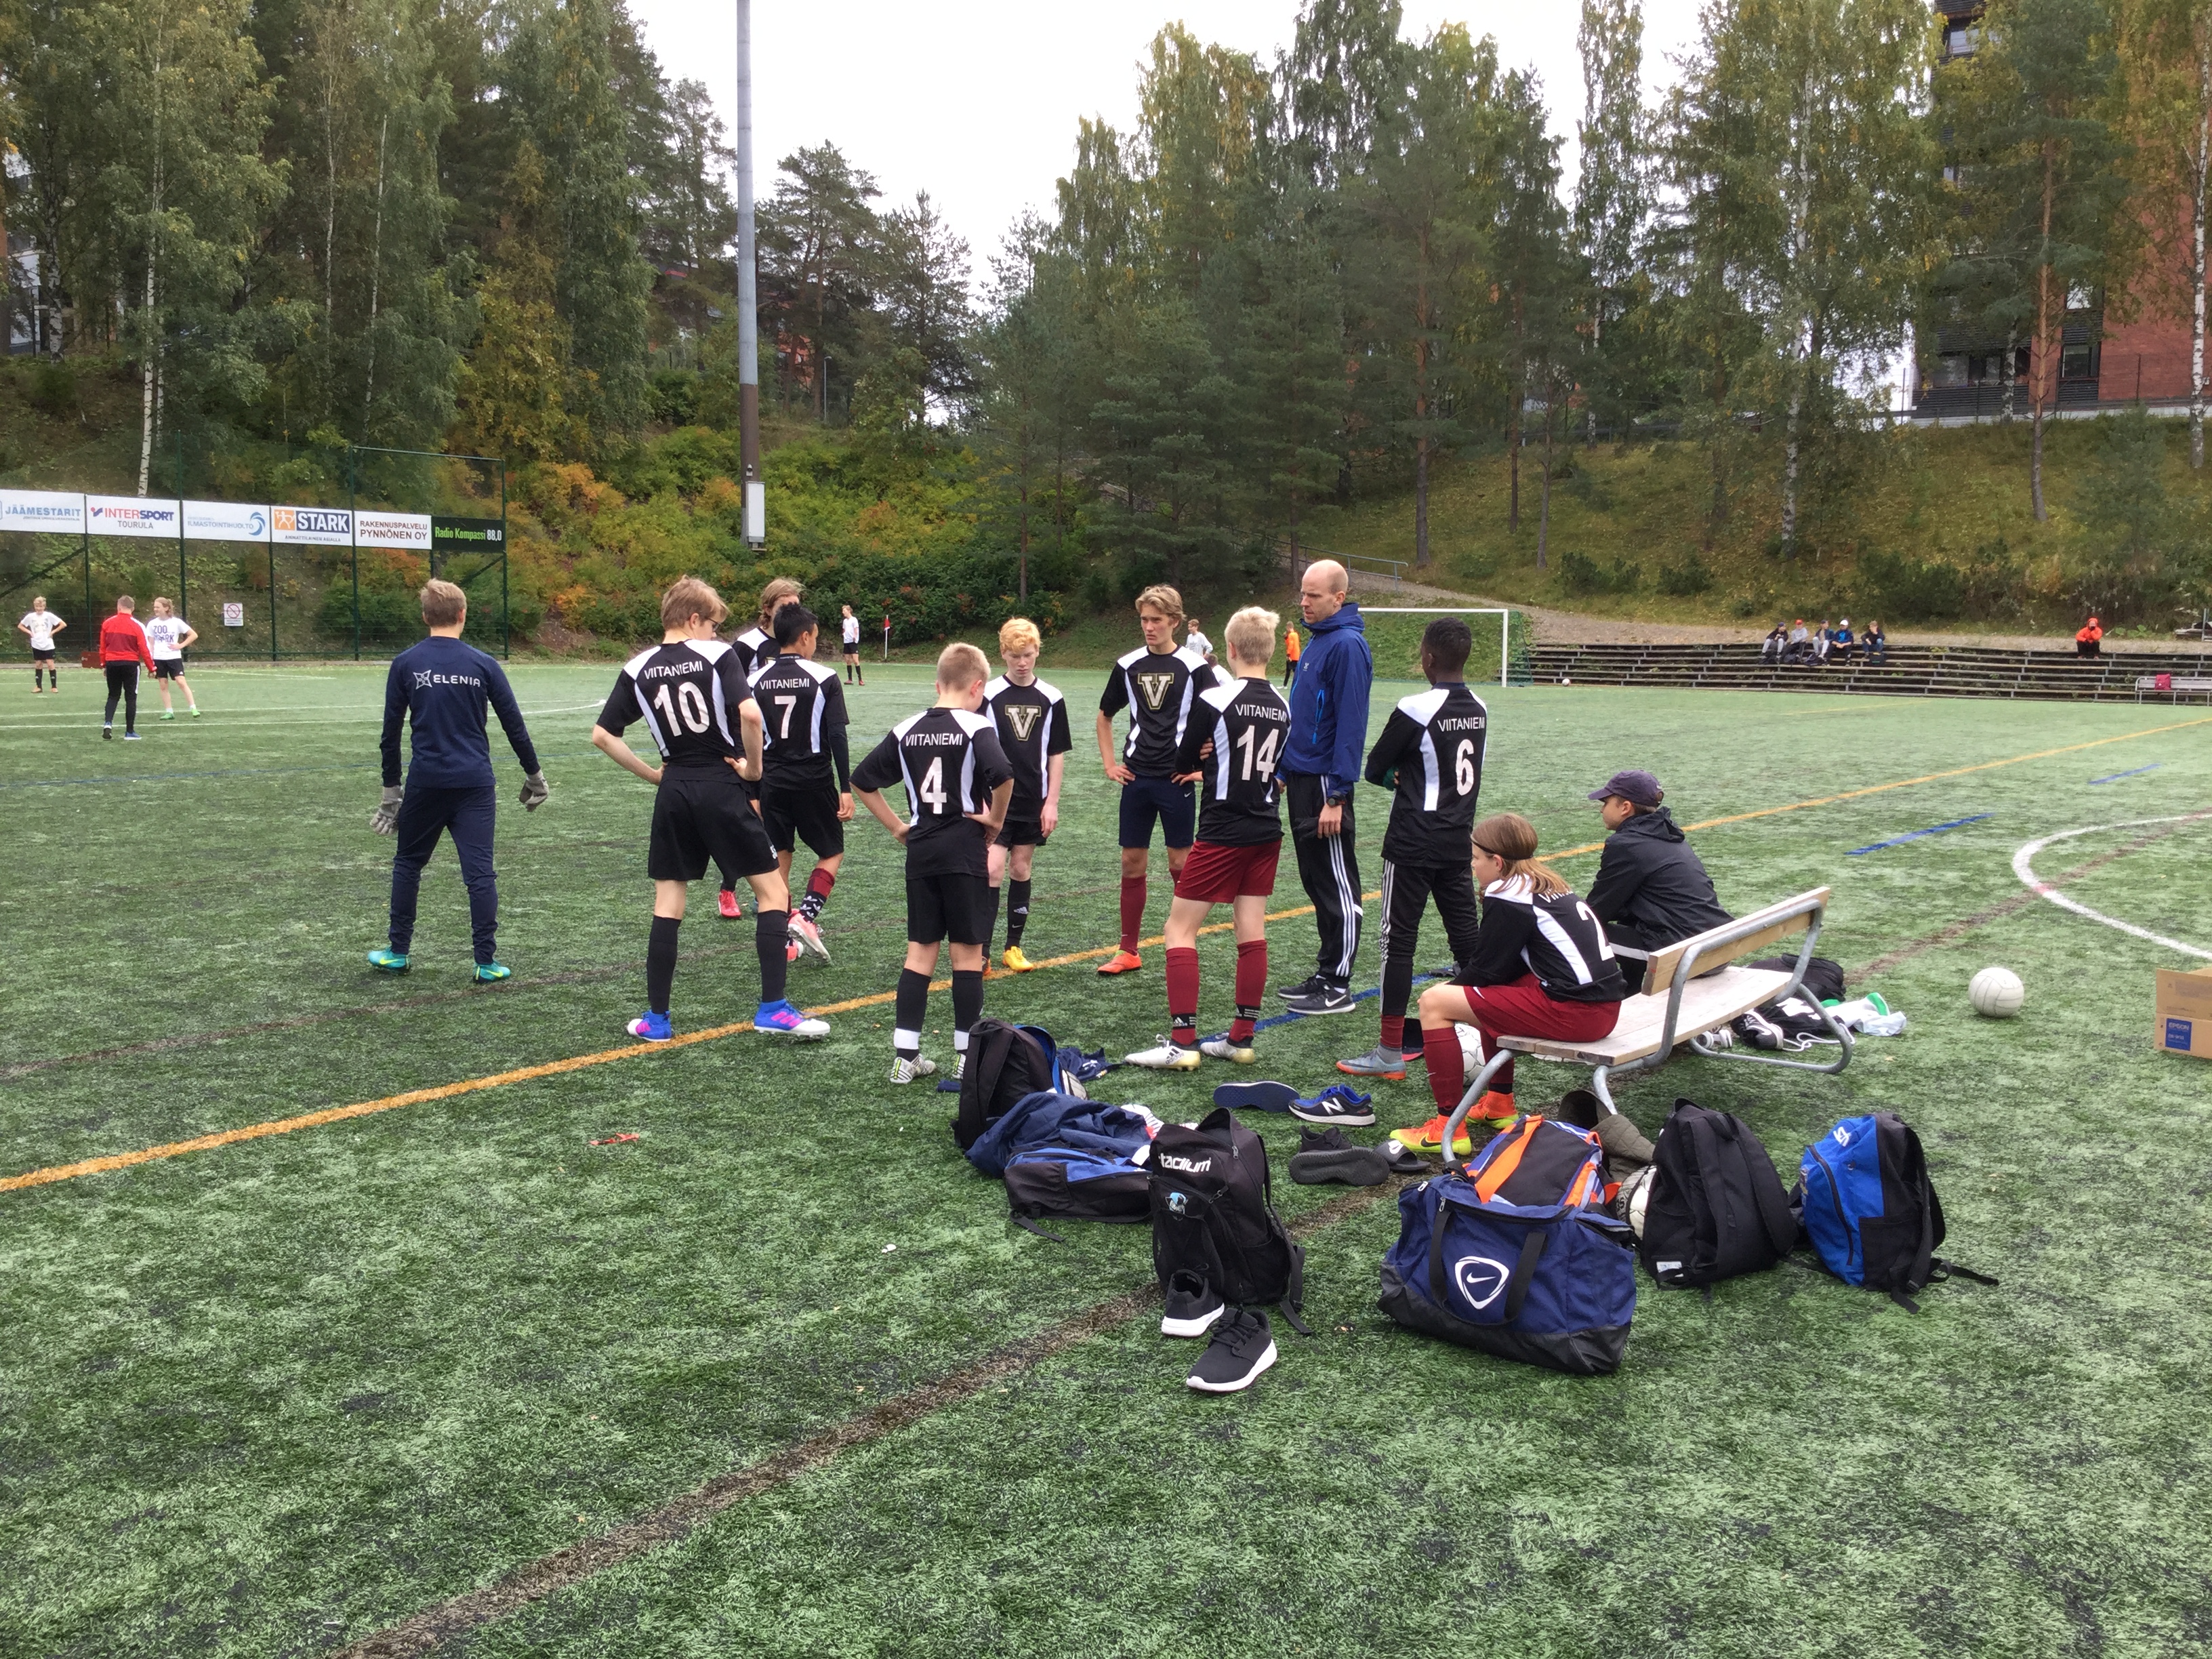 Koulujenvälinen jalkapallon Jyväskylän mestaruusturnaus käynnissä. Ottelu  Viitaniemi - Tikkakoski.